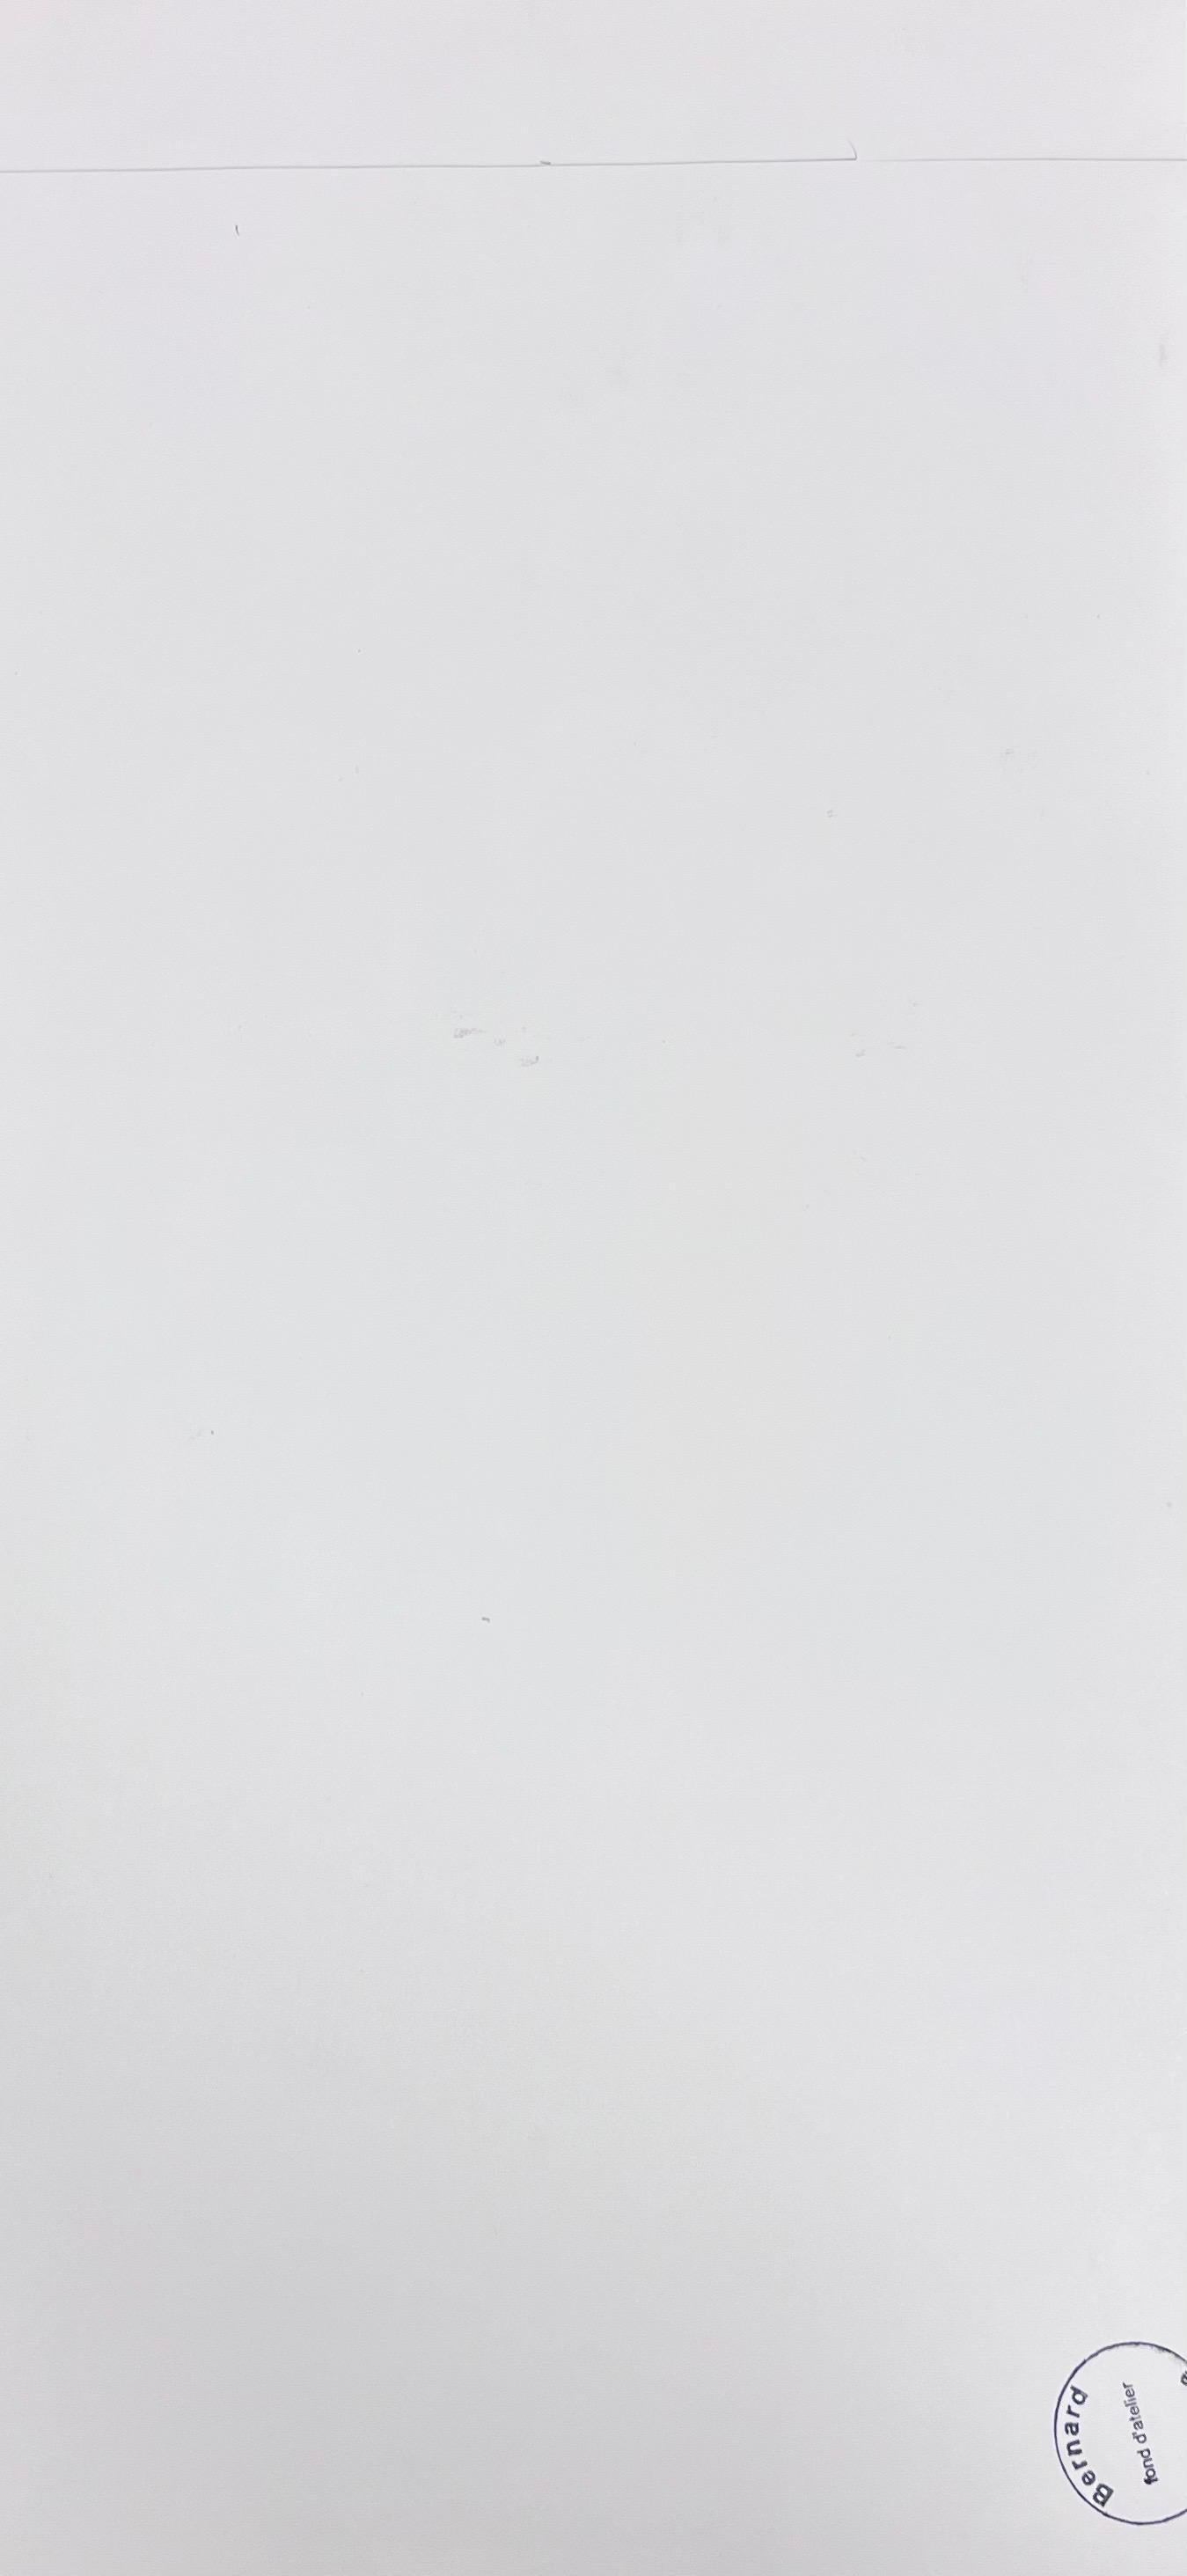 Französische Landschaft
von Bernard Labbe (Französisch, Mitte 20. Jahrhundert) 
Original-Gouache auf Künstlerpapier
Größe: 20,5 x 10 Zoll
Zustand: sehr gut und genussbereit

Herkunft: Atelier/Atelier des Künstlers, Frankreich (verso gestempelt)